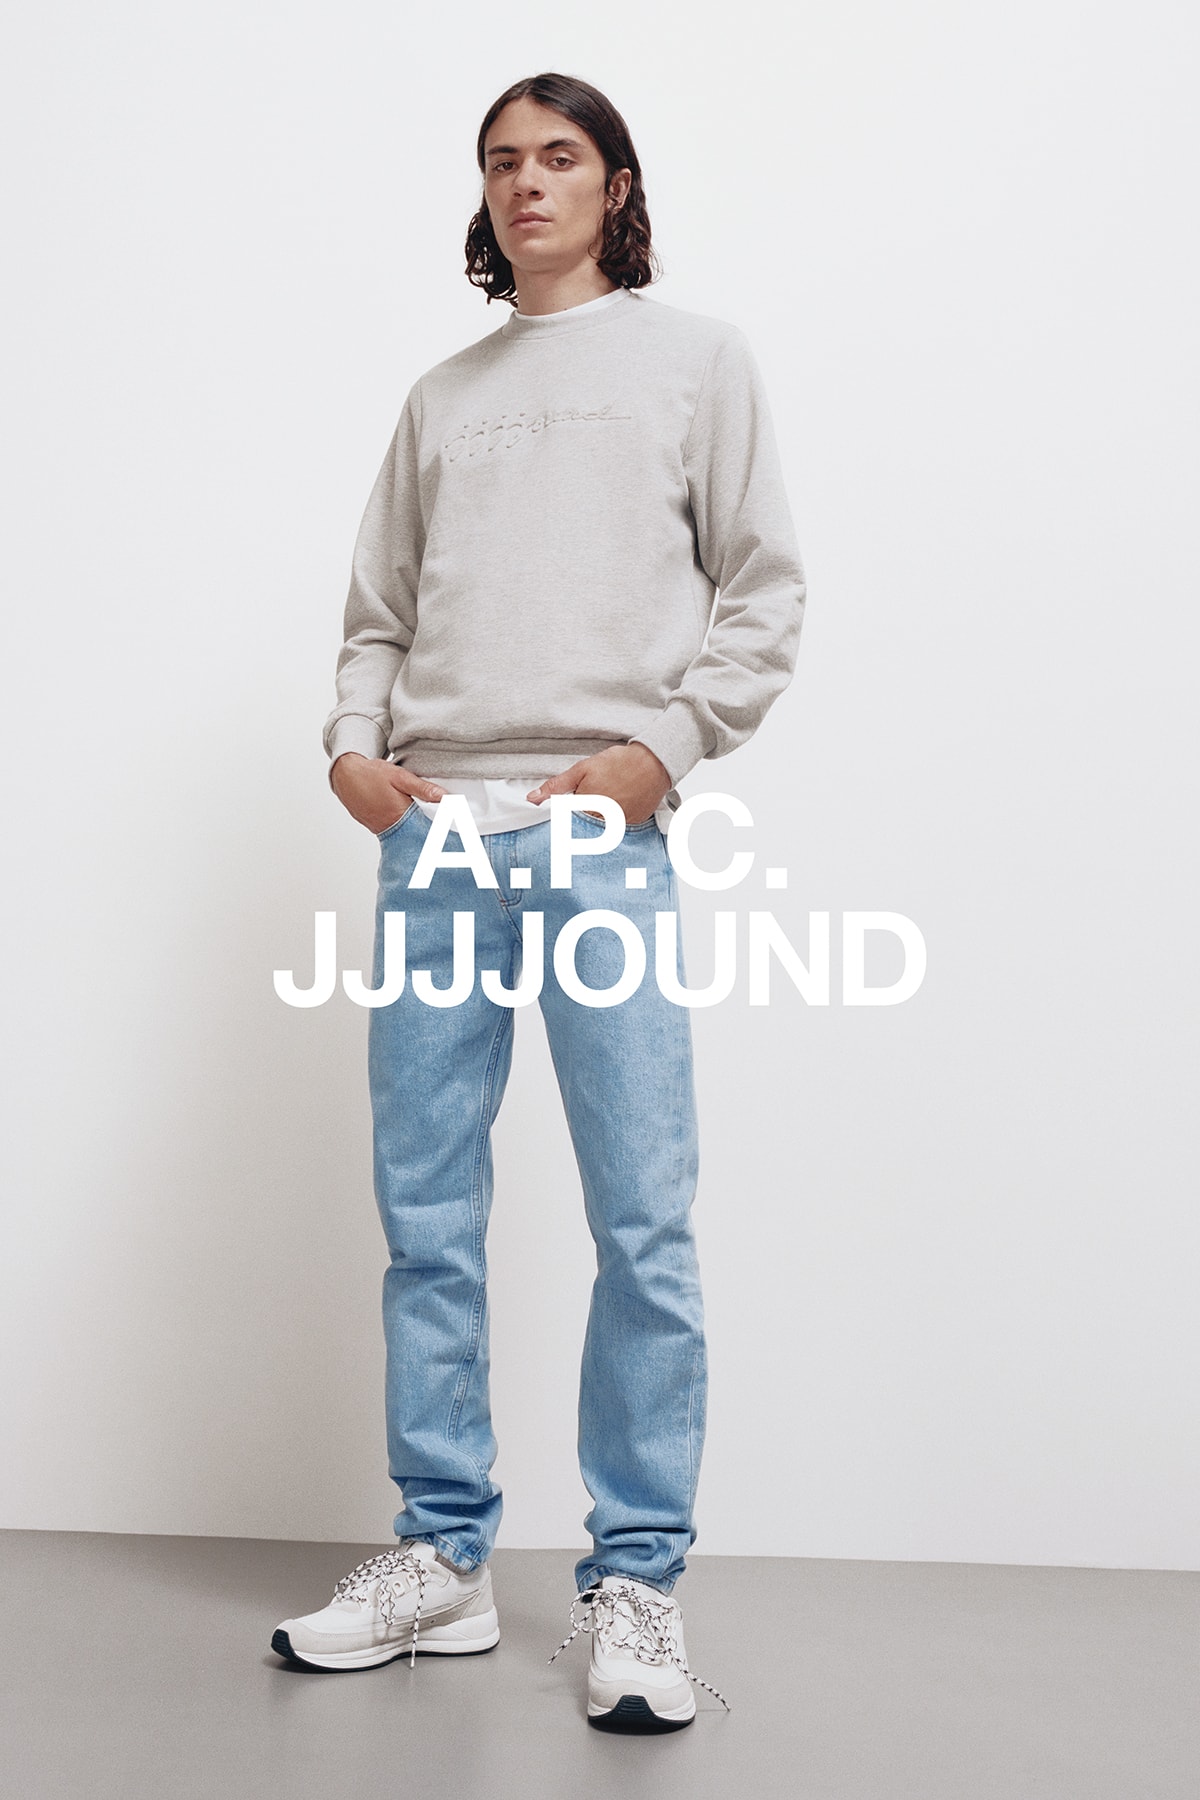 JJJJound x A.P.C. Collection Lookbook Justin Sweatshirt Petit Standard Stonewashed Indigo Pale Heather Grey